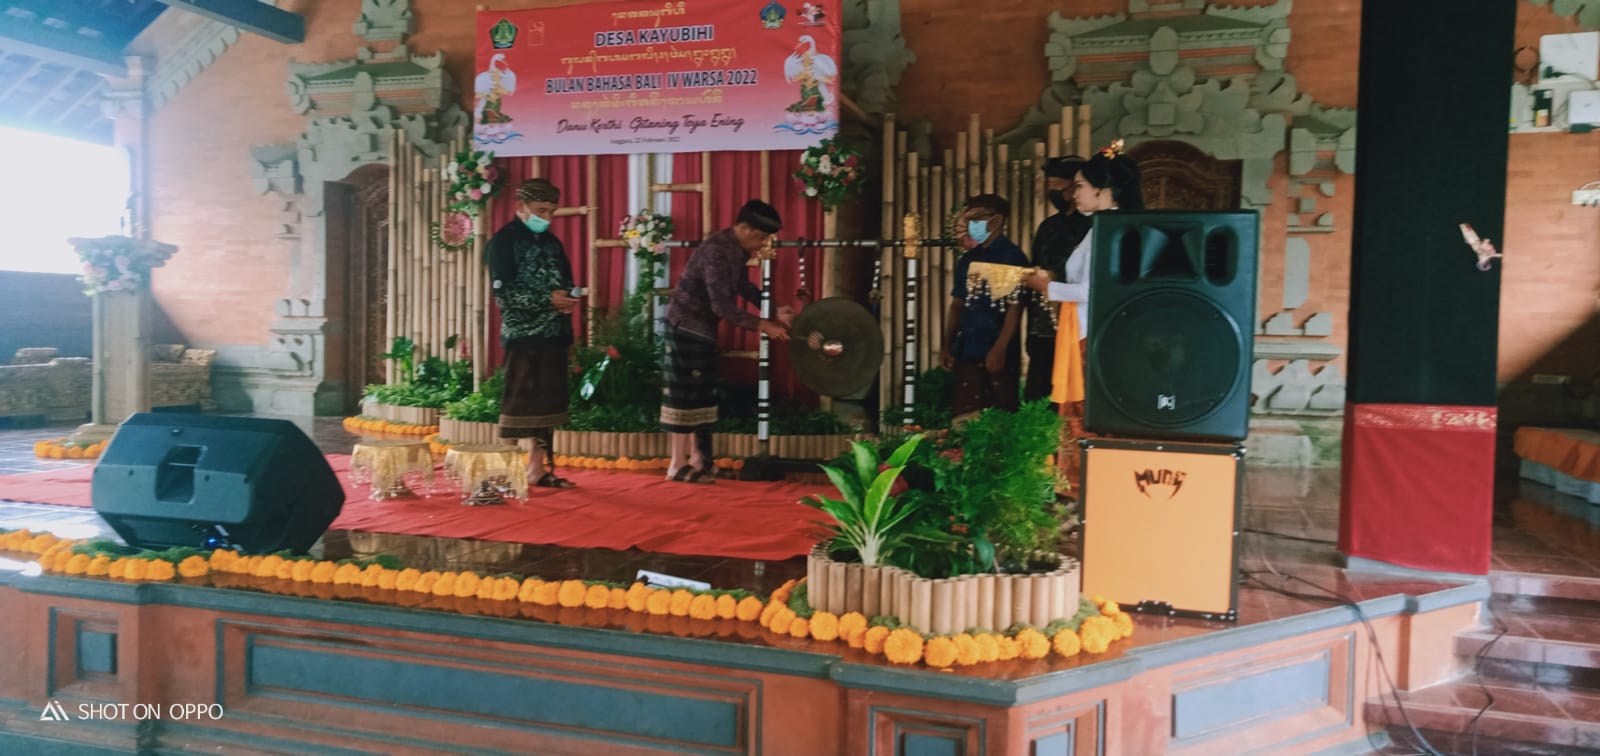 Pemerintah Desa Kayubihi menyelenggarakan Bulan Basa Bali Tahun 2022